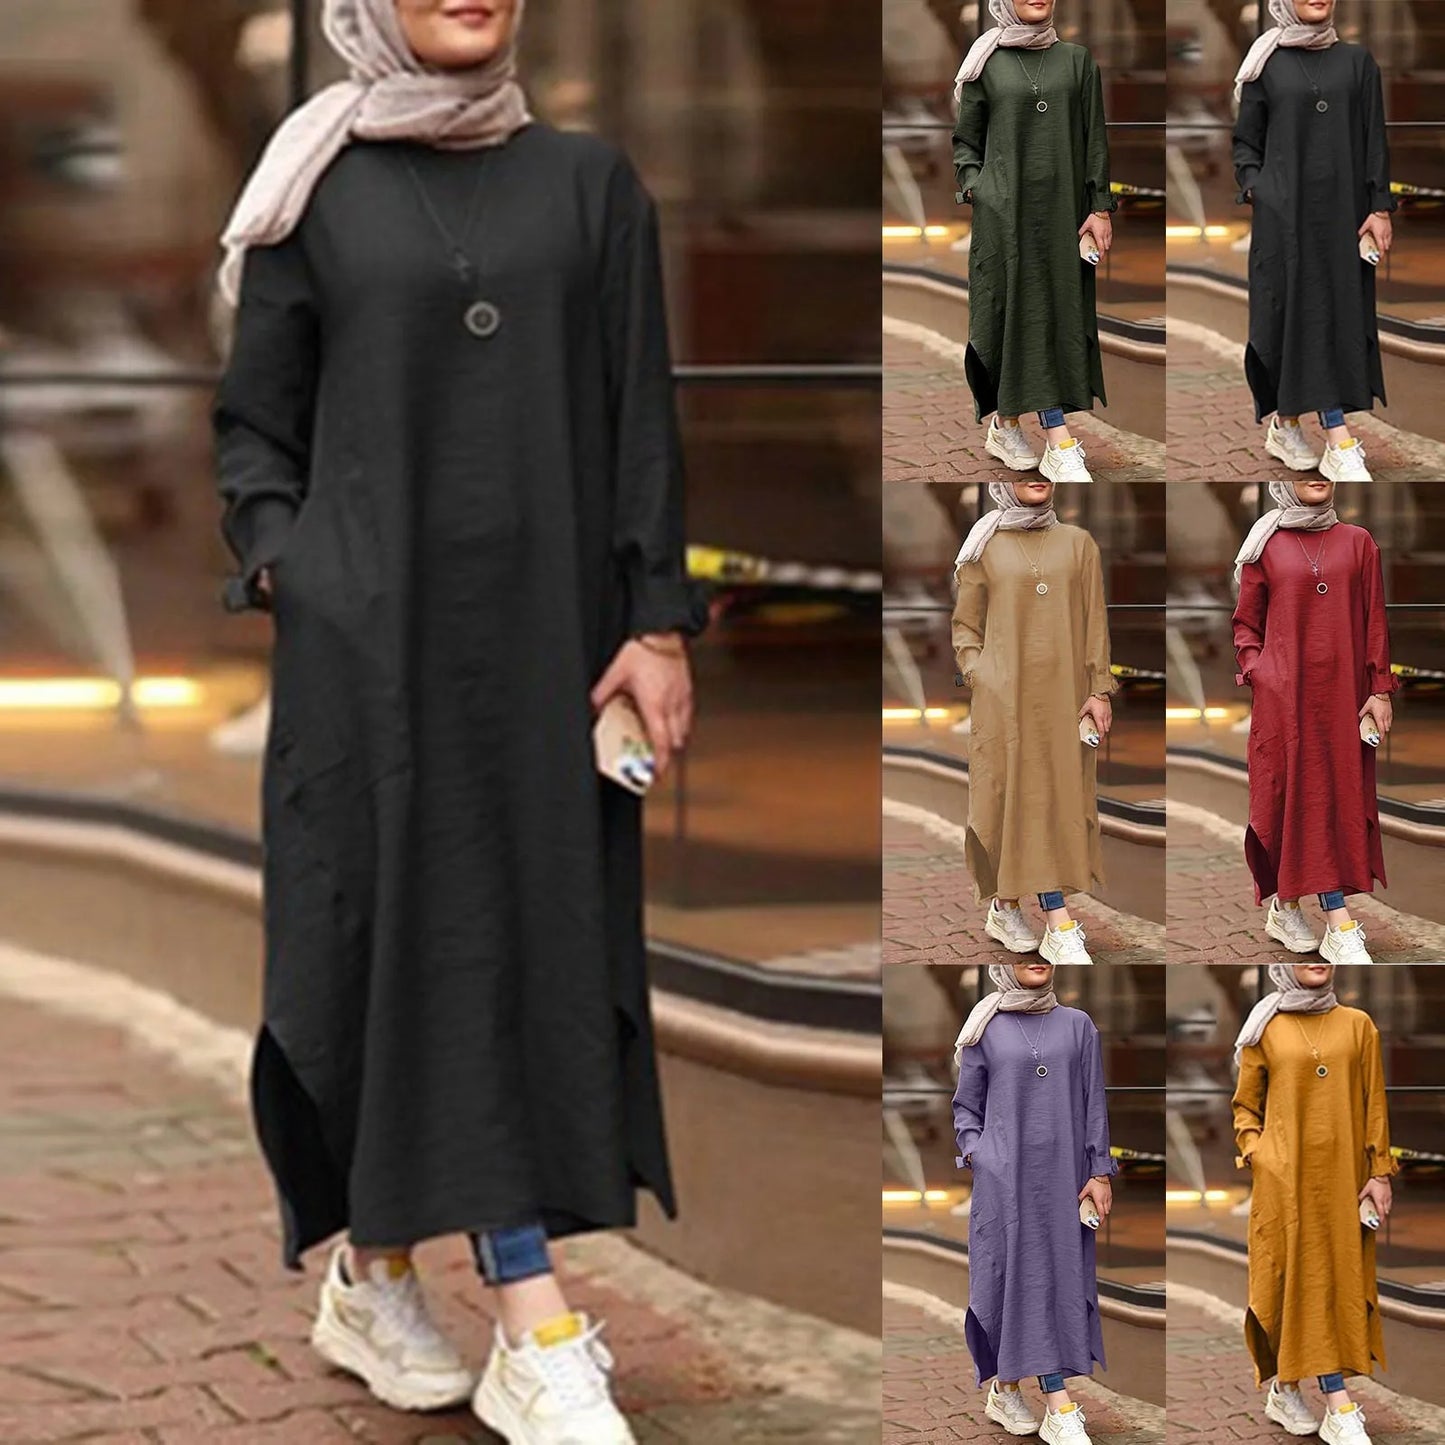 Ramadan Abaya Women's Solid Color Long Sleeve Shirt Pocket Long Dress Casual Robe Muslim Woman Dress Dubai Abaya Islamic Dresses